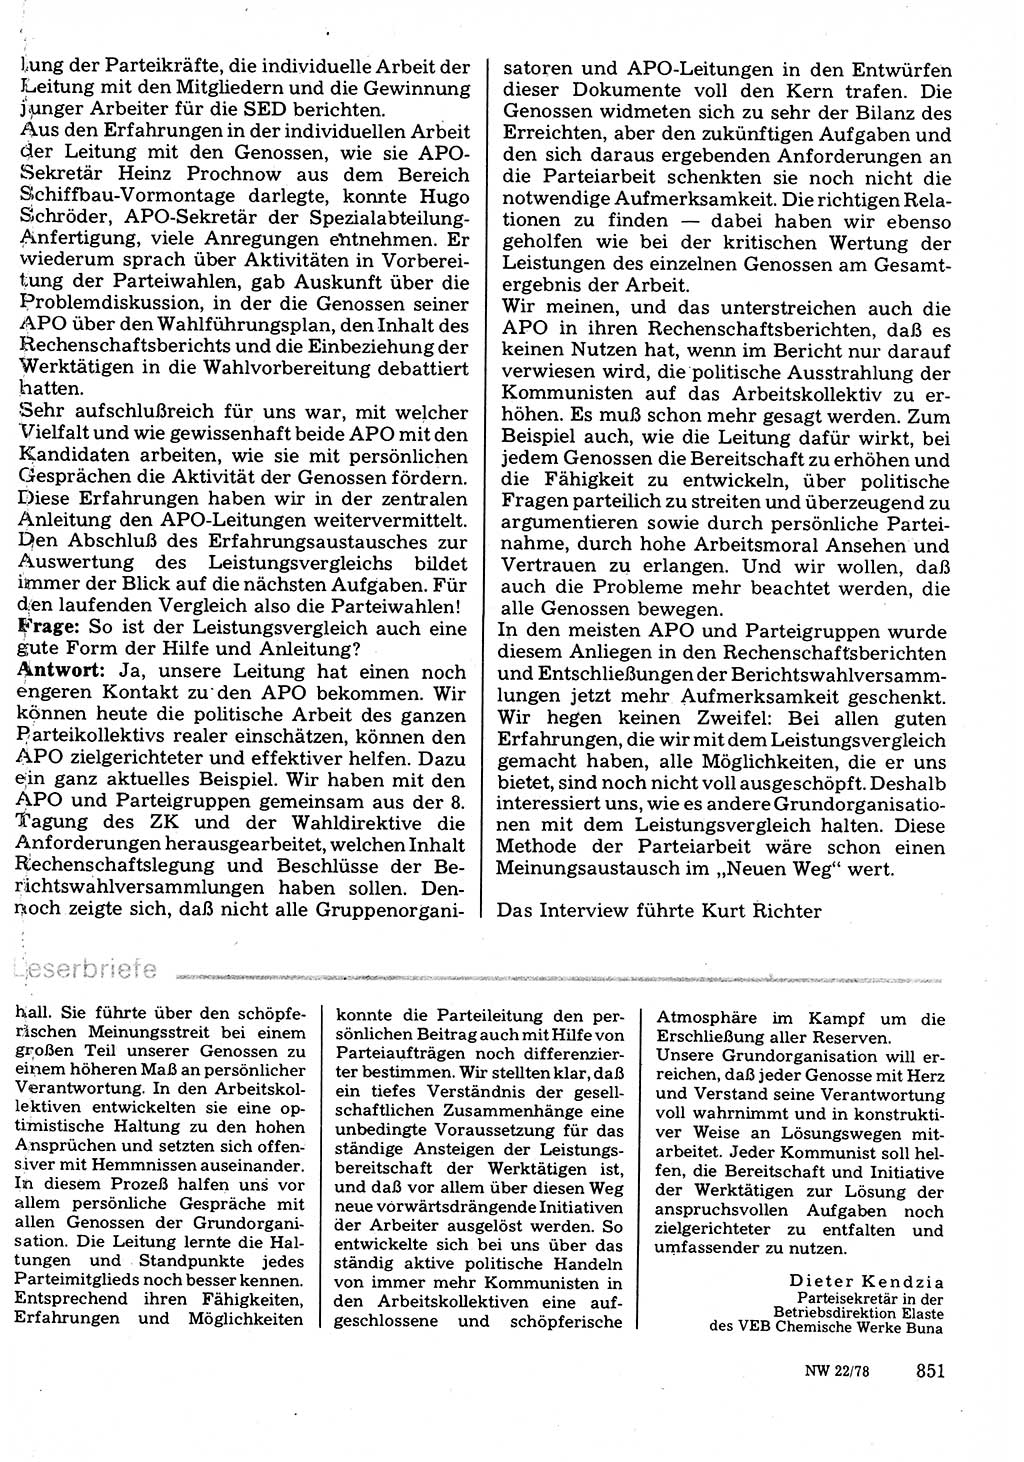 Neuer Weg (NW), Organ des Zentralkomitees (ZK) der SED (Sozialistische Einheitspartei Deutschlands) für Fragen des Parteilebens, 33. Jahrgang [Deutsche Demokratische Republik (DDR)] 1978, Seite 851 (NW ZK SED DDR 1978, S. 851)